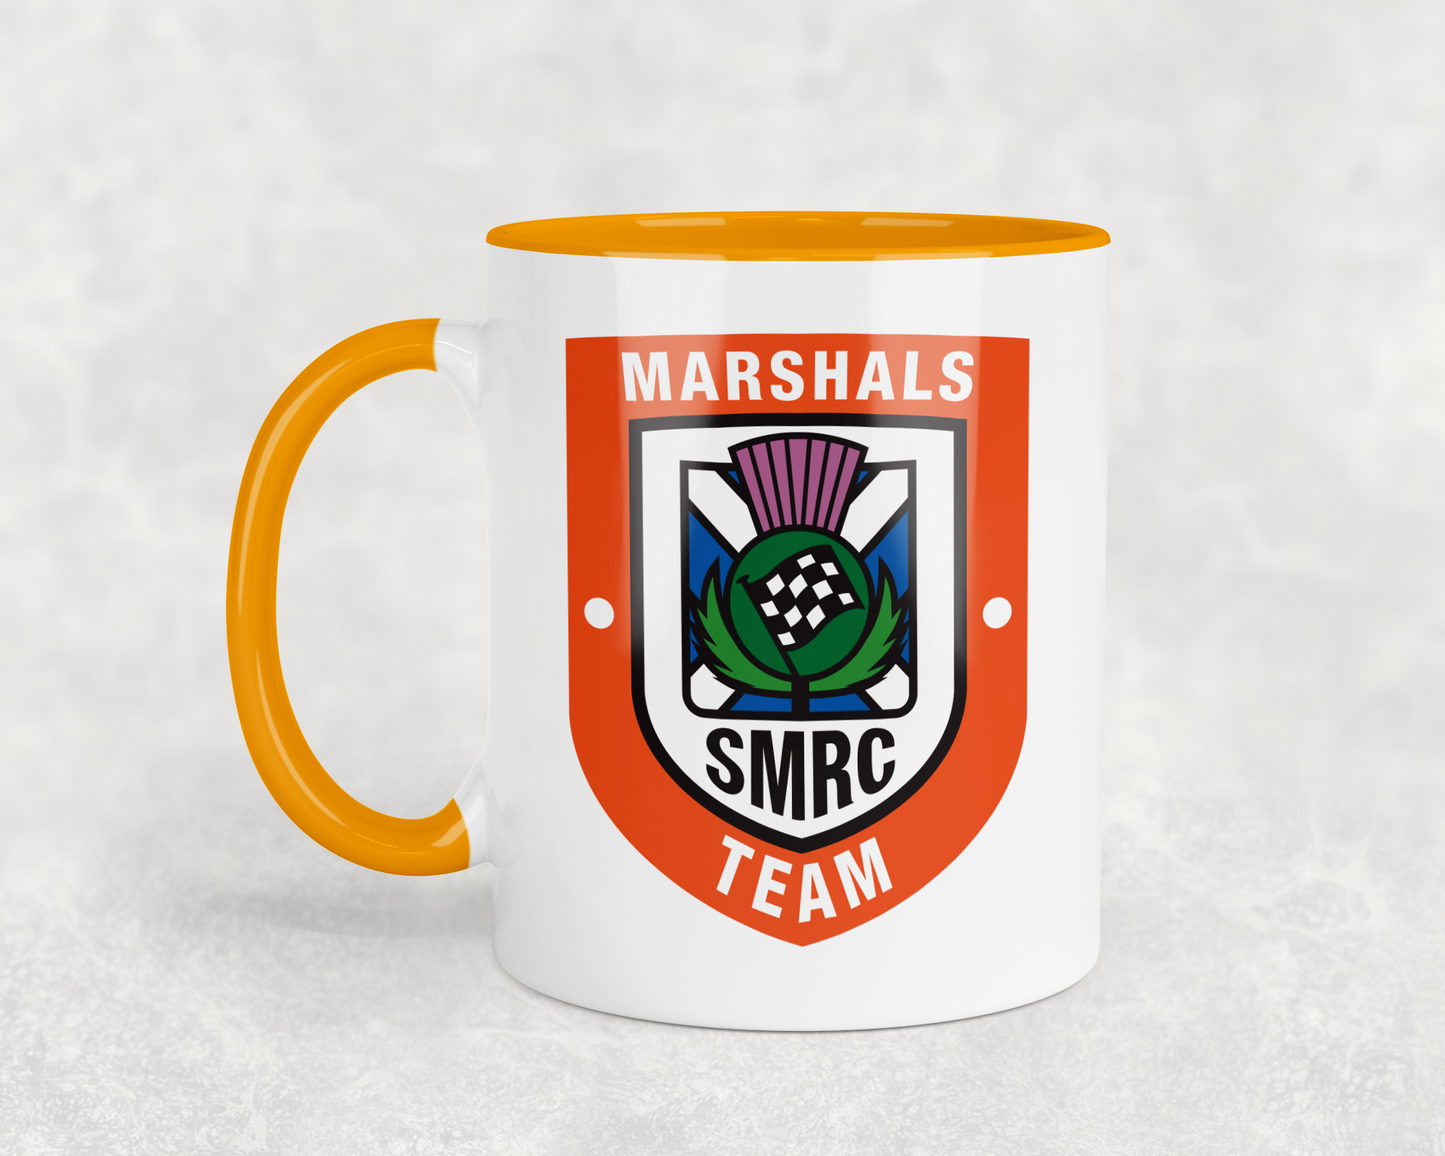 SMRC Marshals Team Contrast Mug